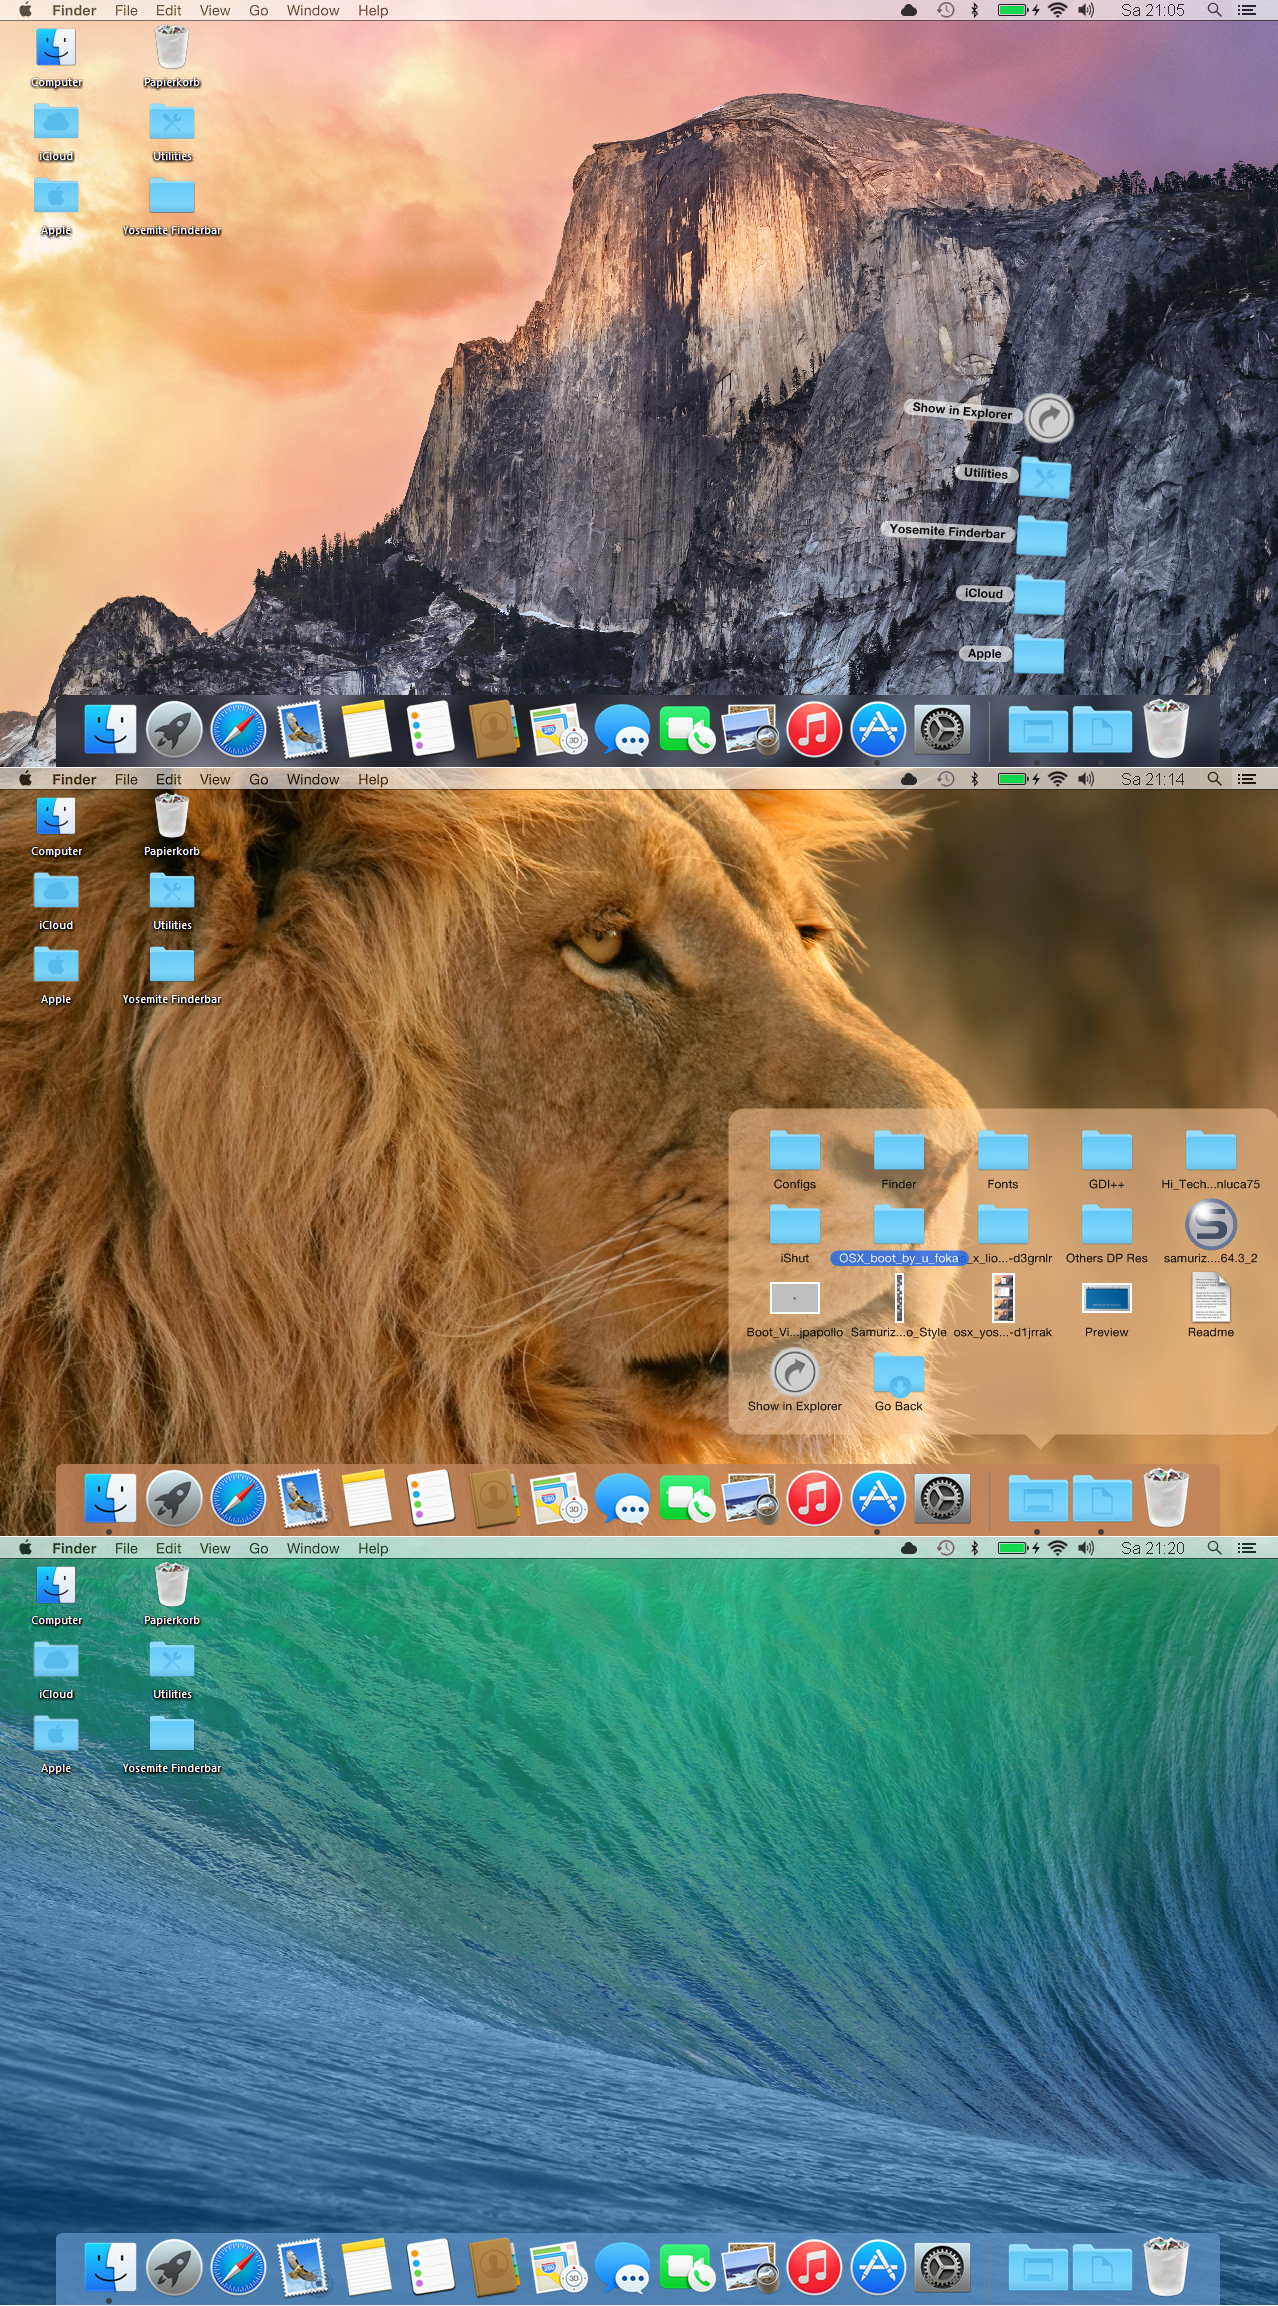 make one icon large on mac desktop